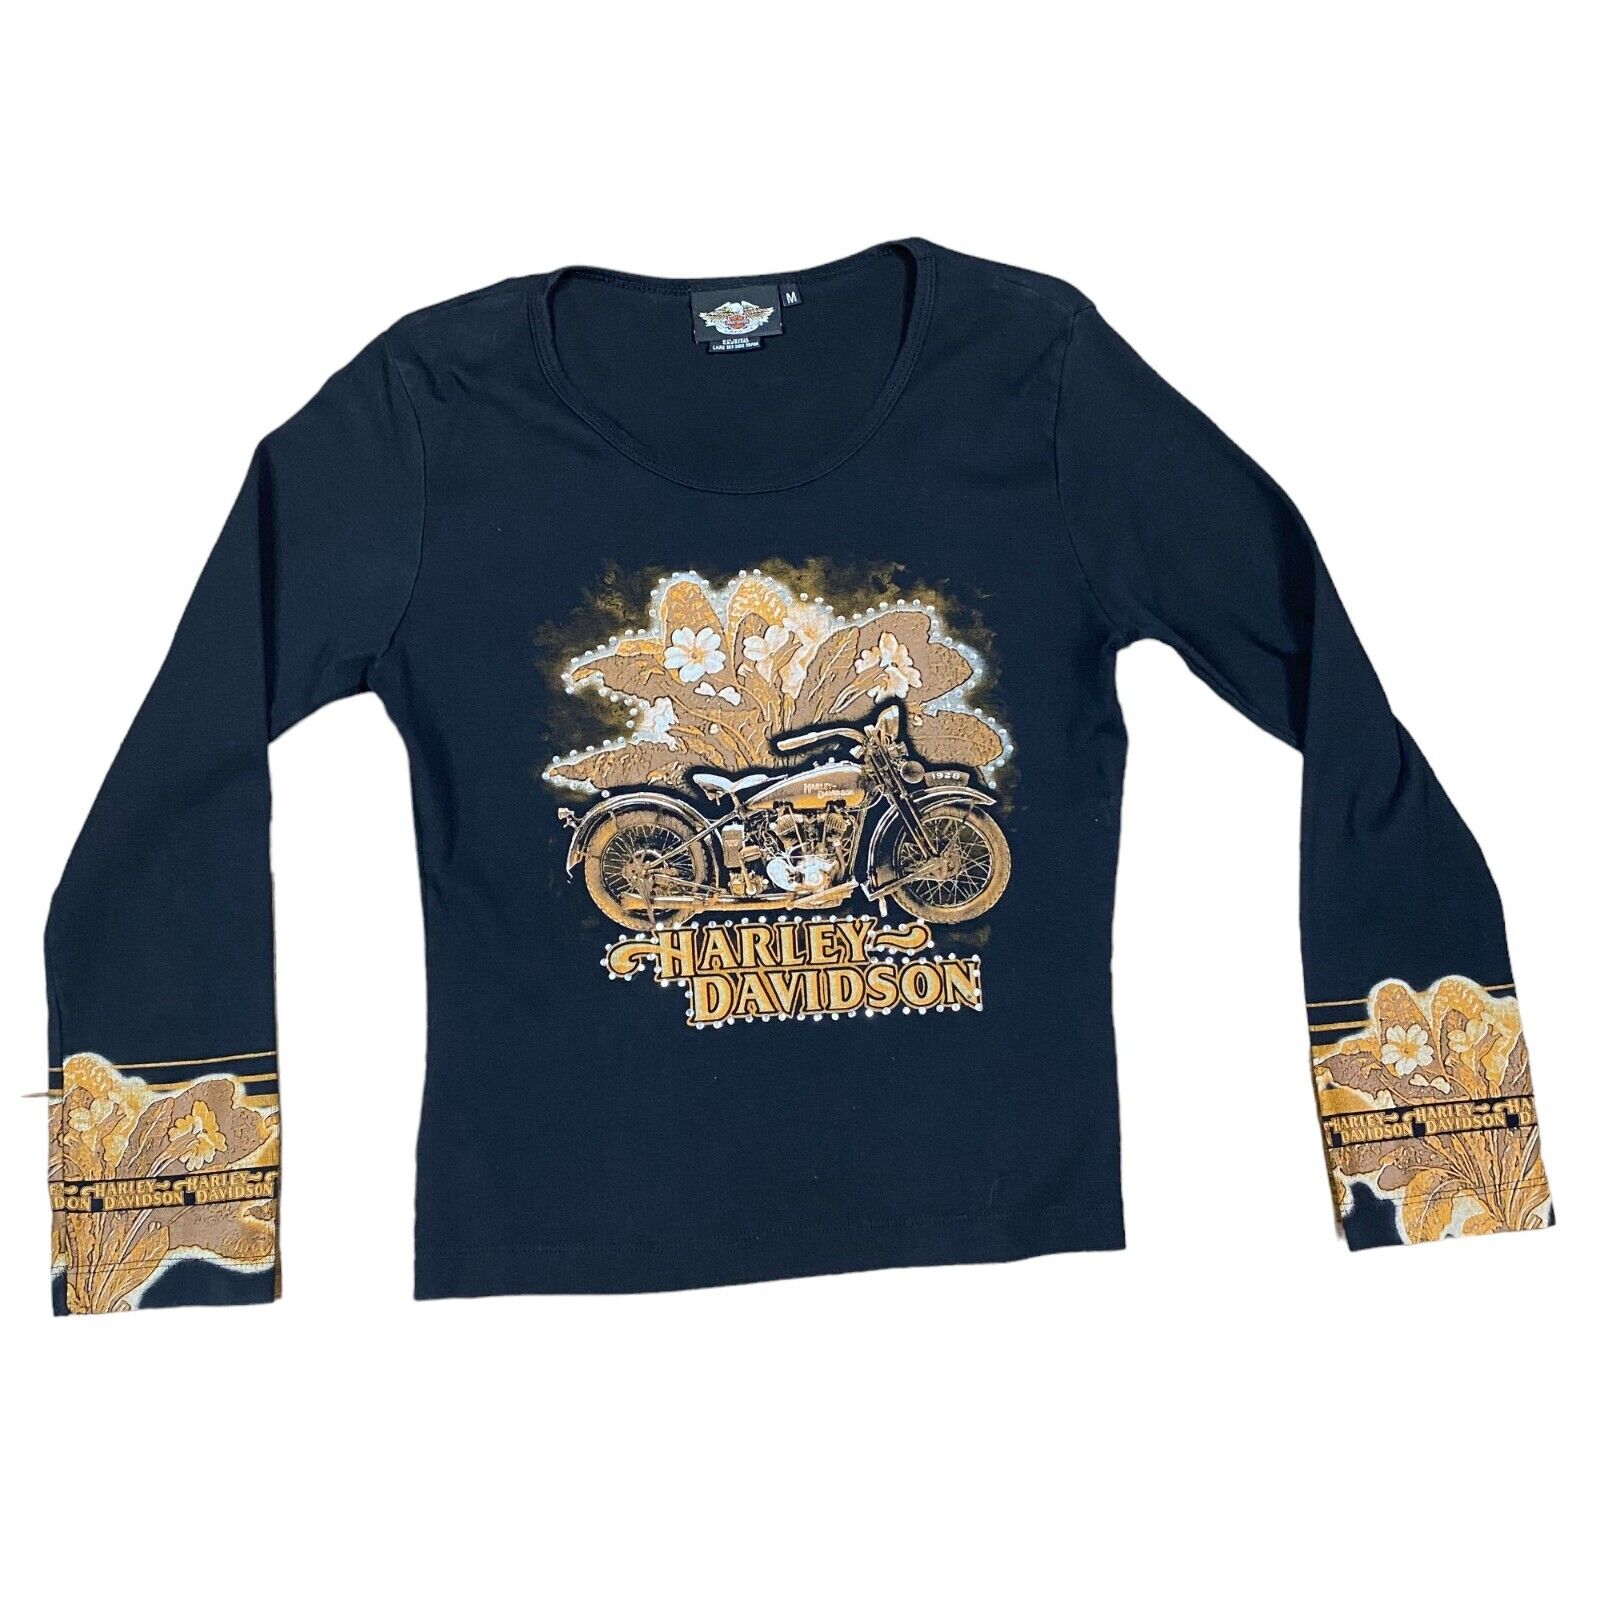 Harley Davidson Motorcycle  Womens Rhinestone Studded Shirt Size Medium VTG